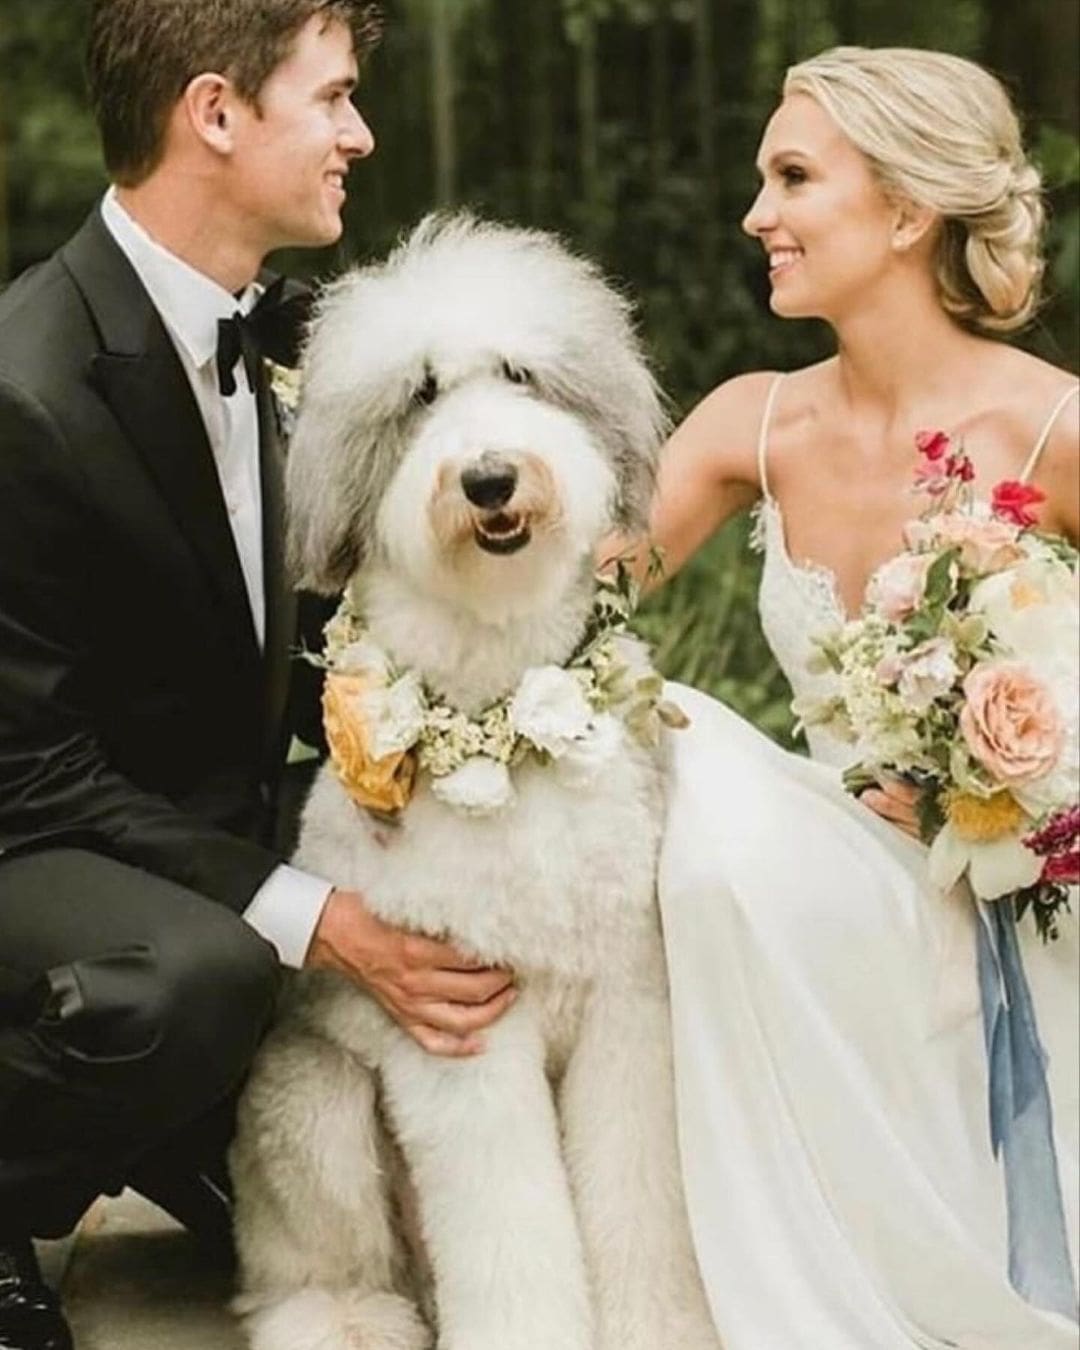 Novios sonrientes posando con su perro adornado con flores en su día de boda.